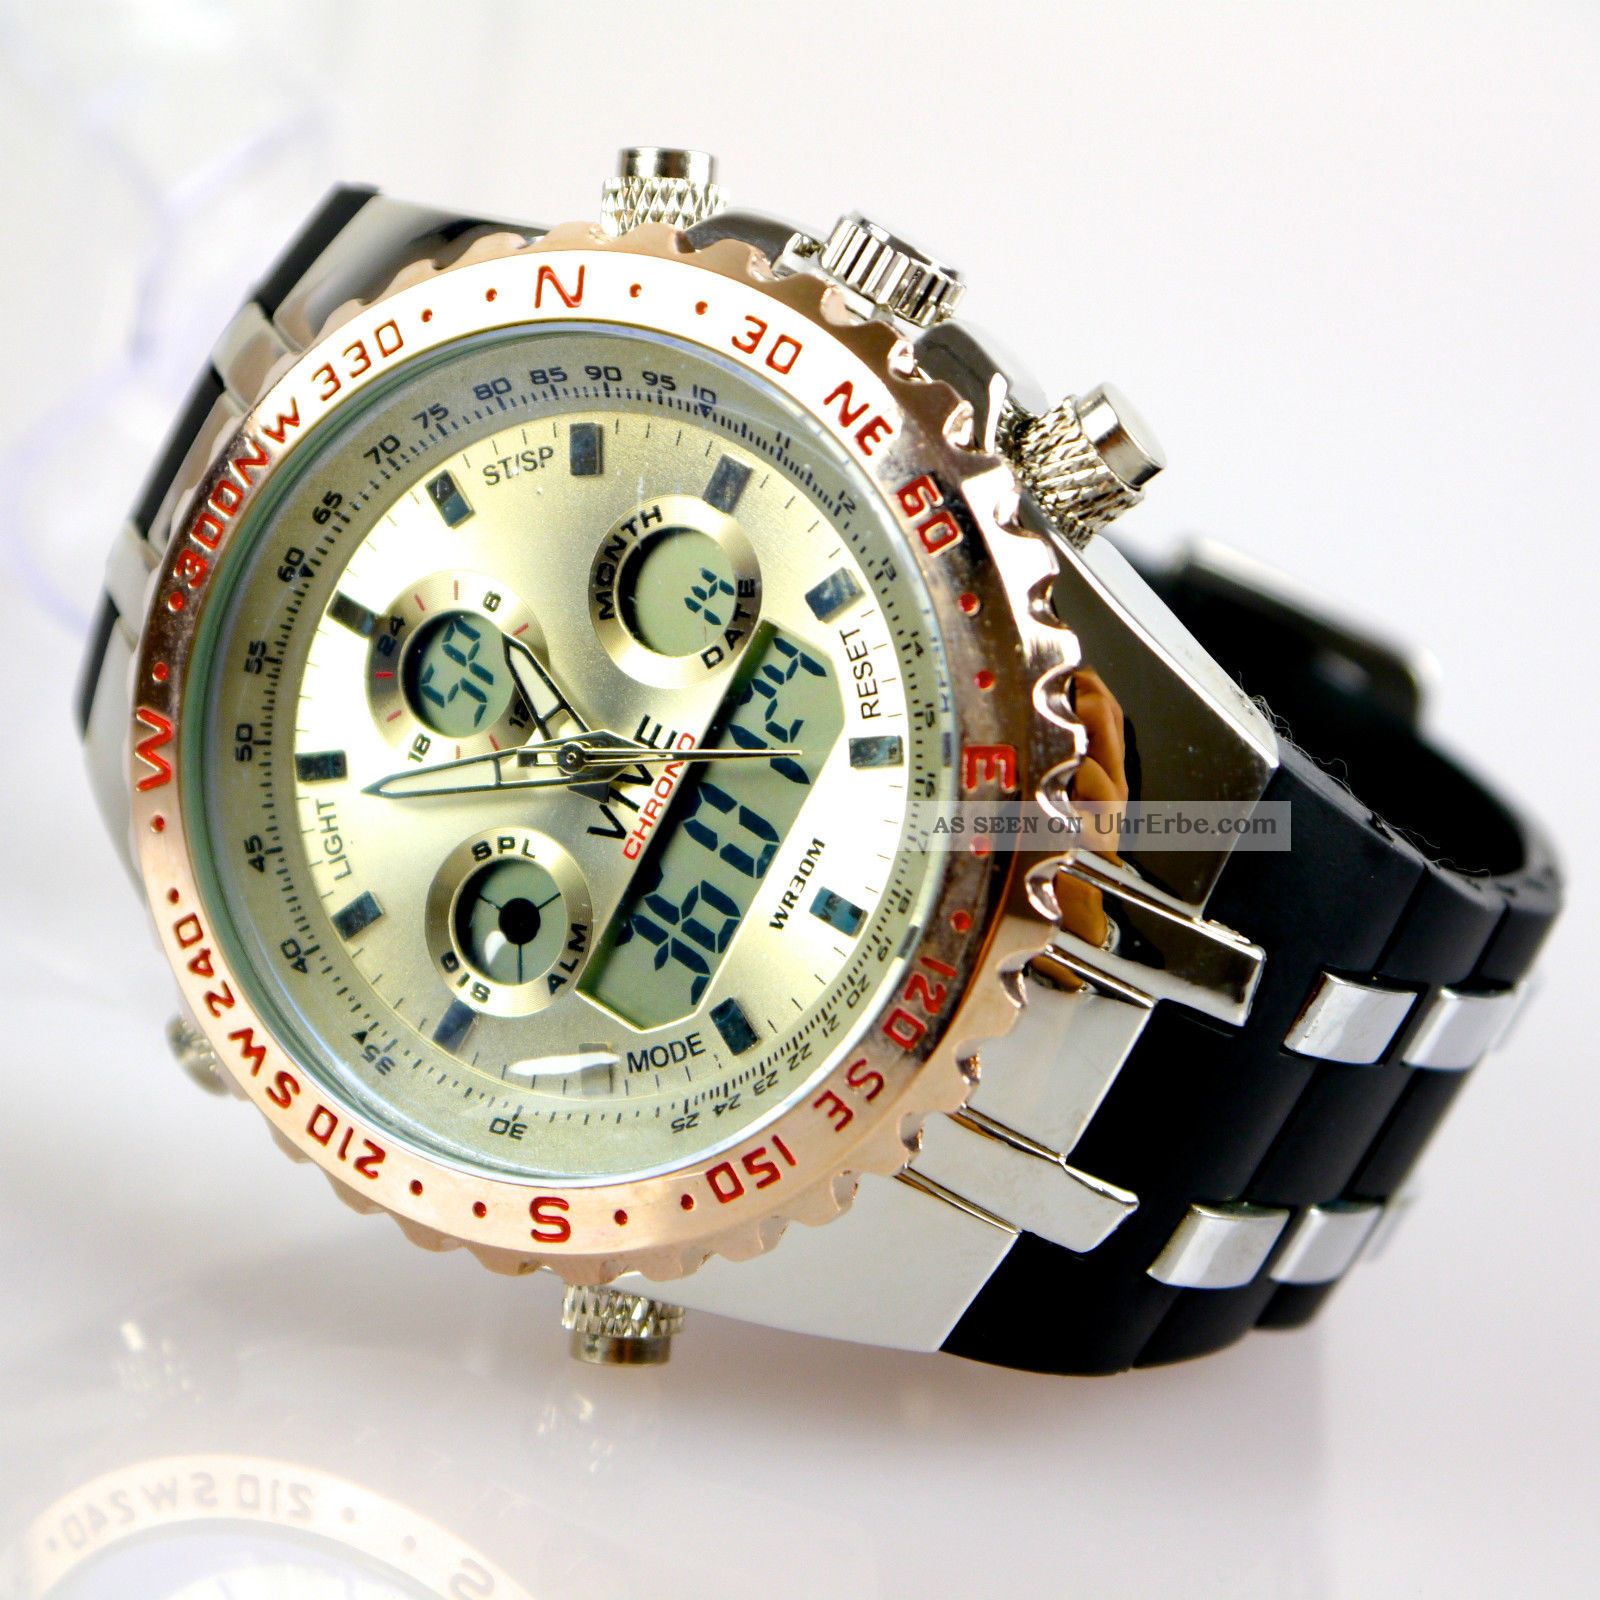 Herren Vive Armband Uhr Hartplastik Schwarz Watch Analog Digital Quarz Armbanduhren Bild